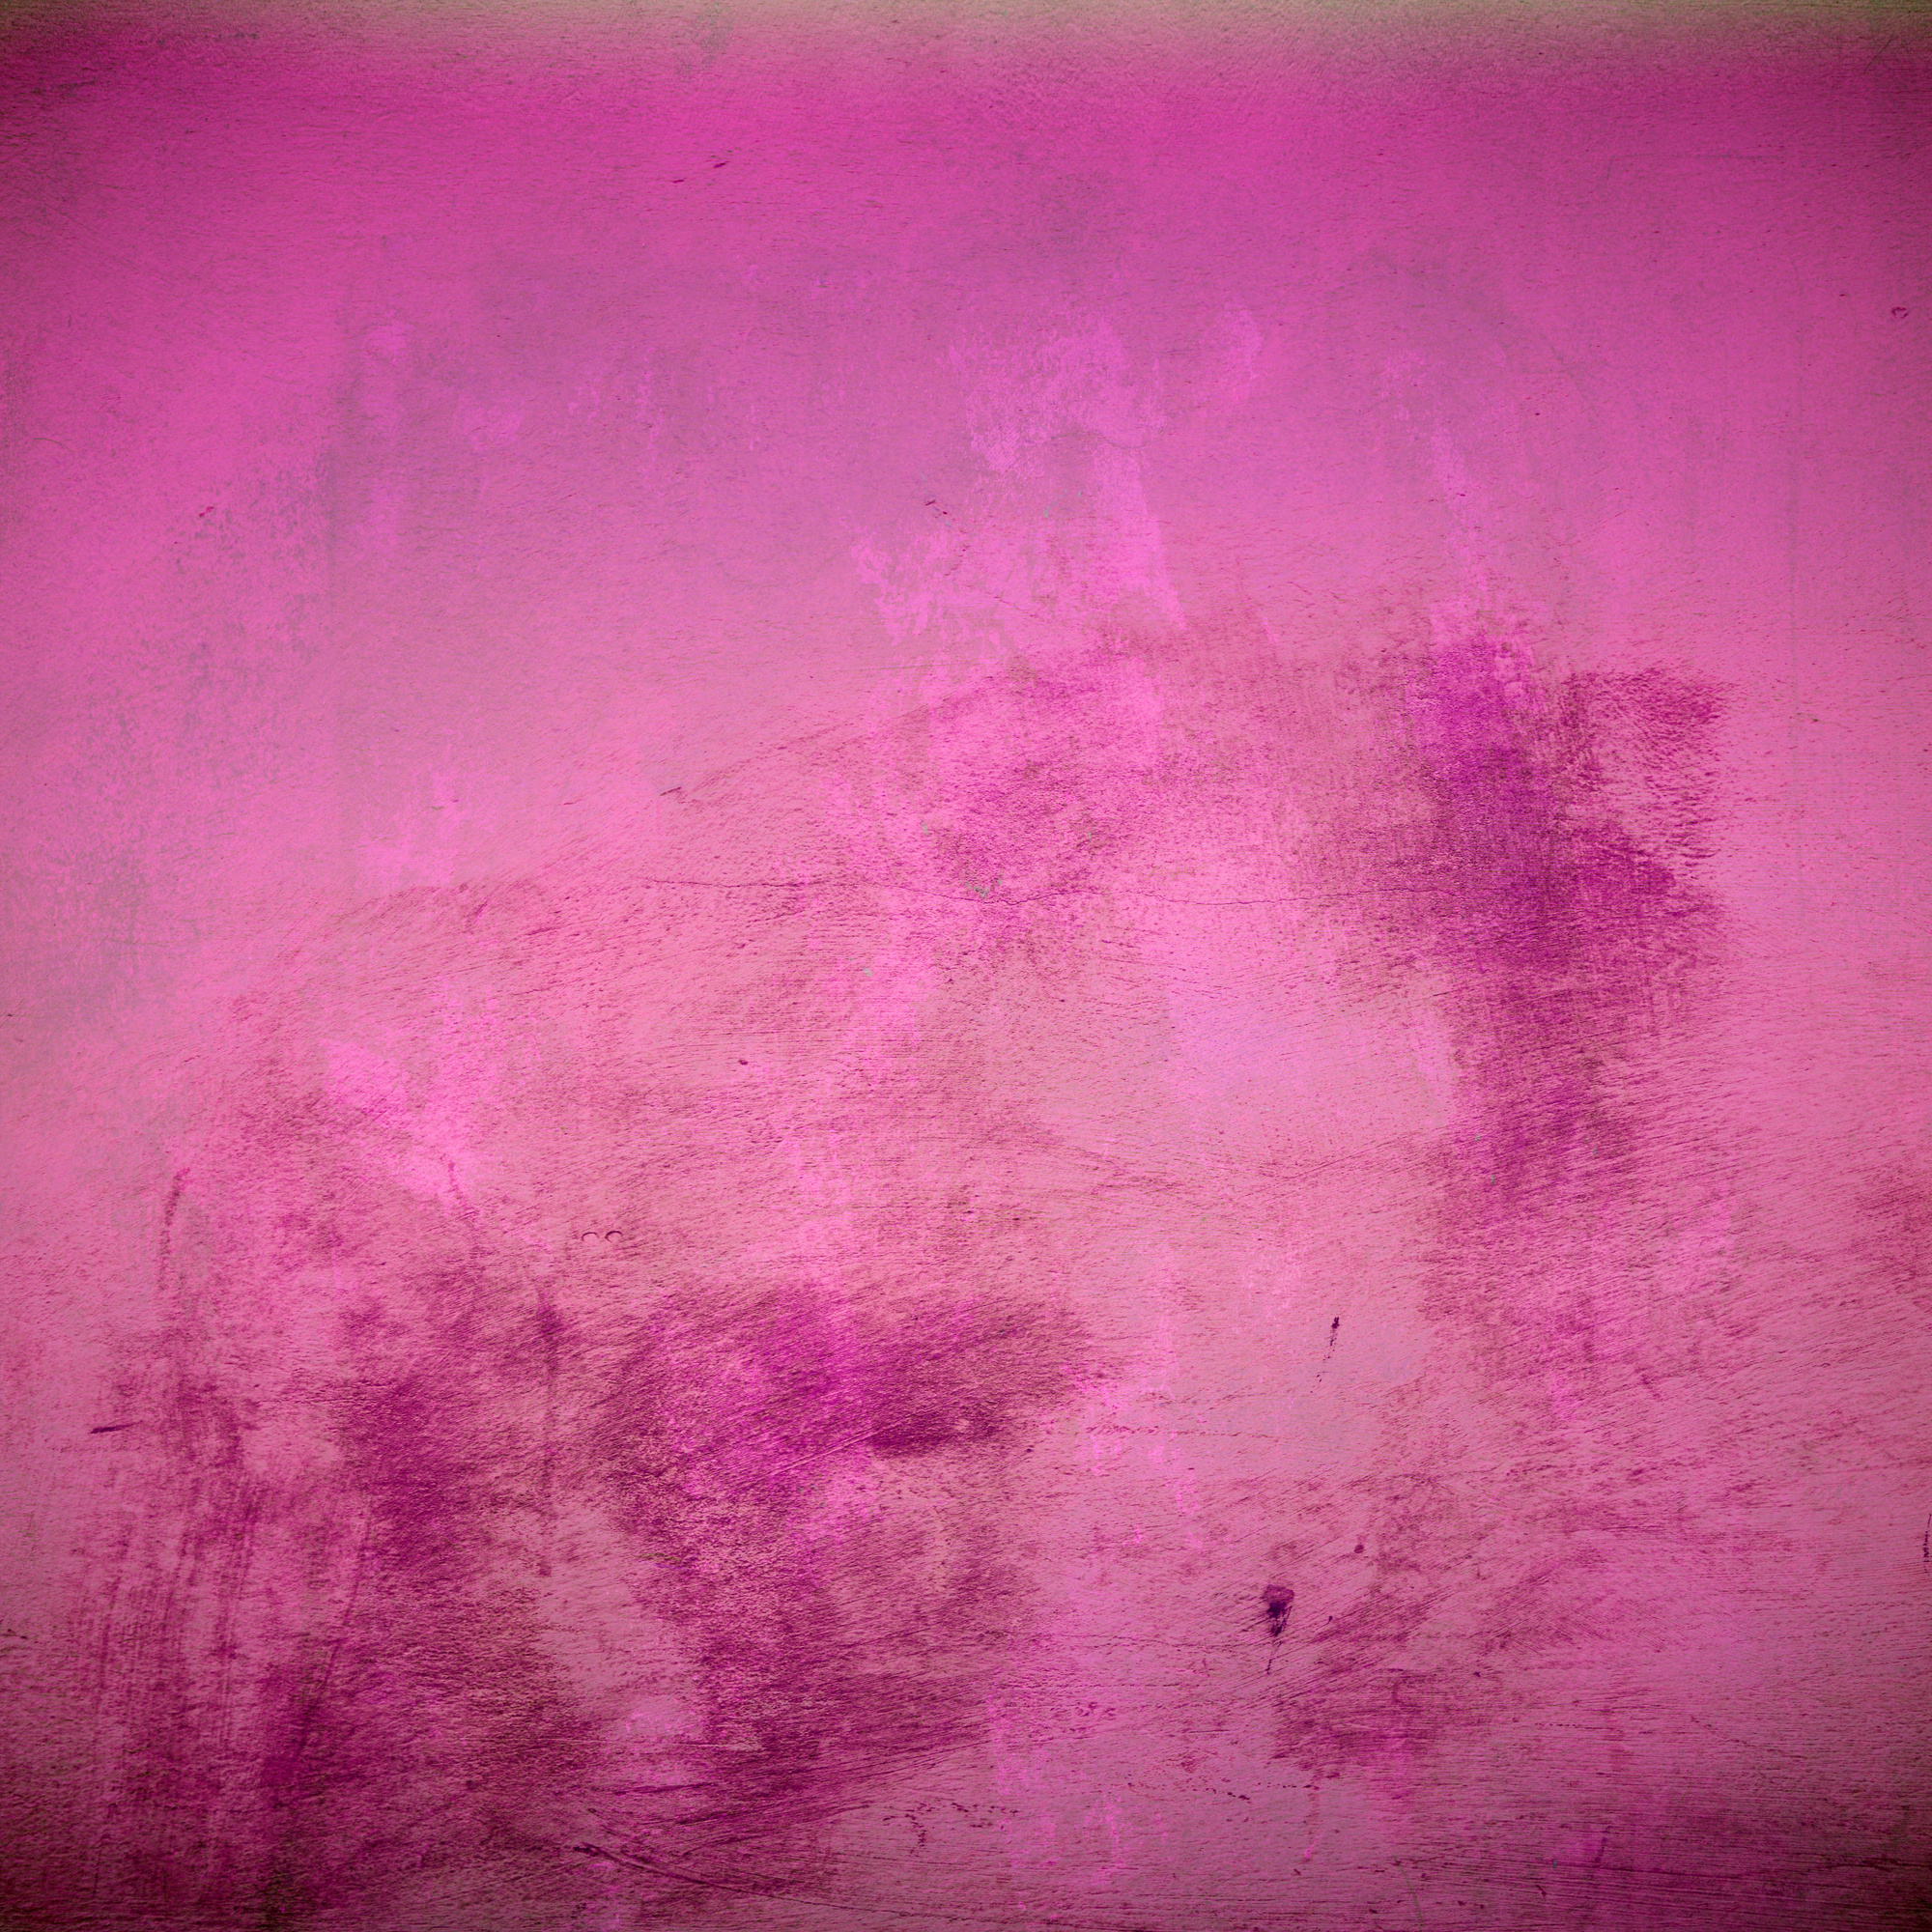 Dark pink texture background